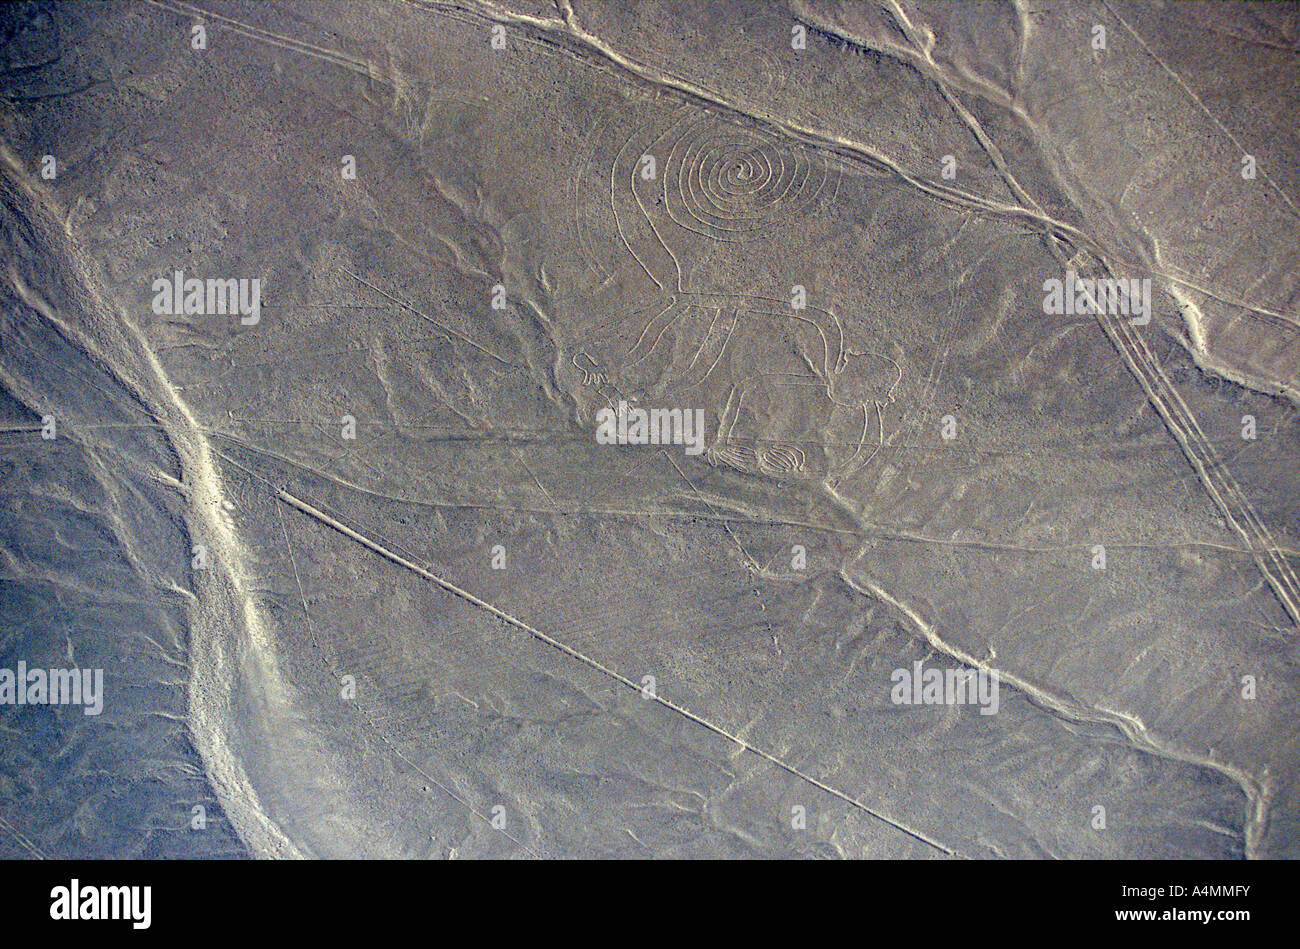 Le linee di Nazca: qui la scimmia (Ica - Perù). Géoglyphes de Nazca, le Lo Strinare (Ica - Pérou). Foto Stock